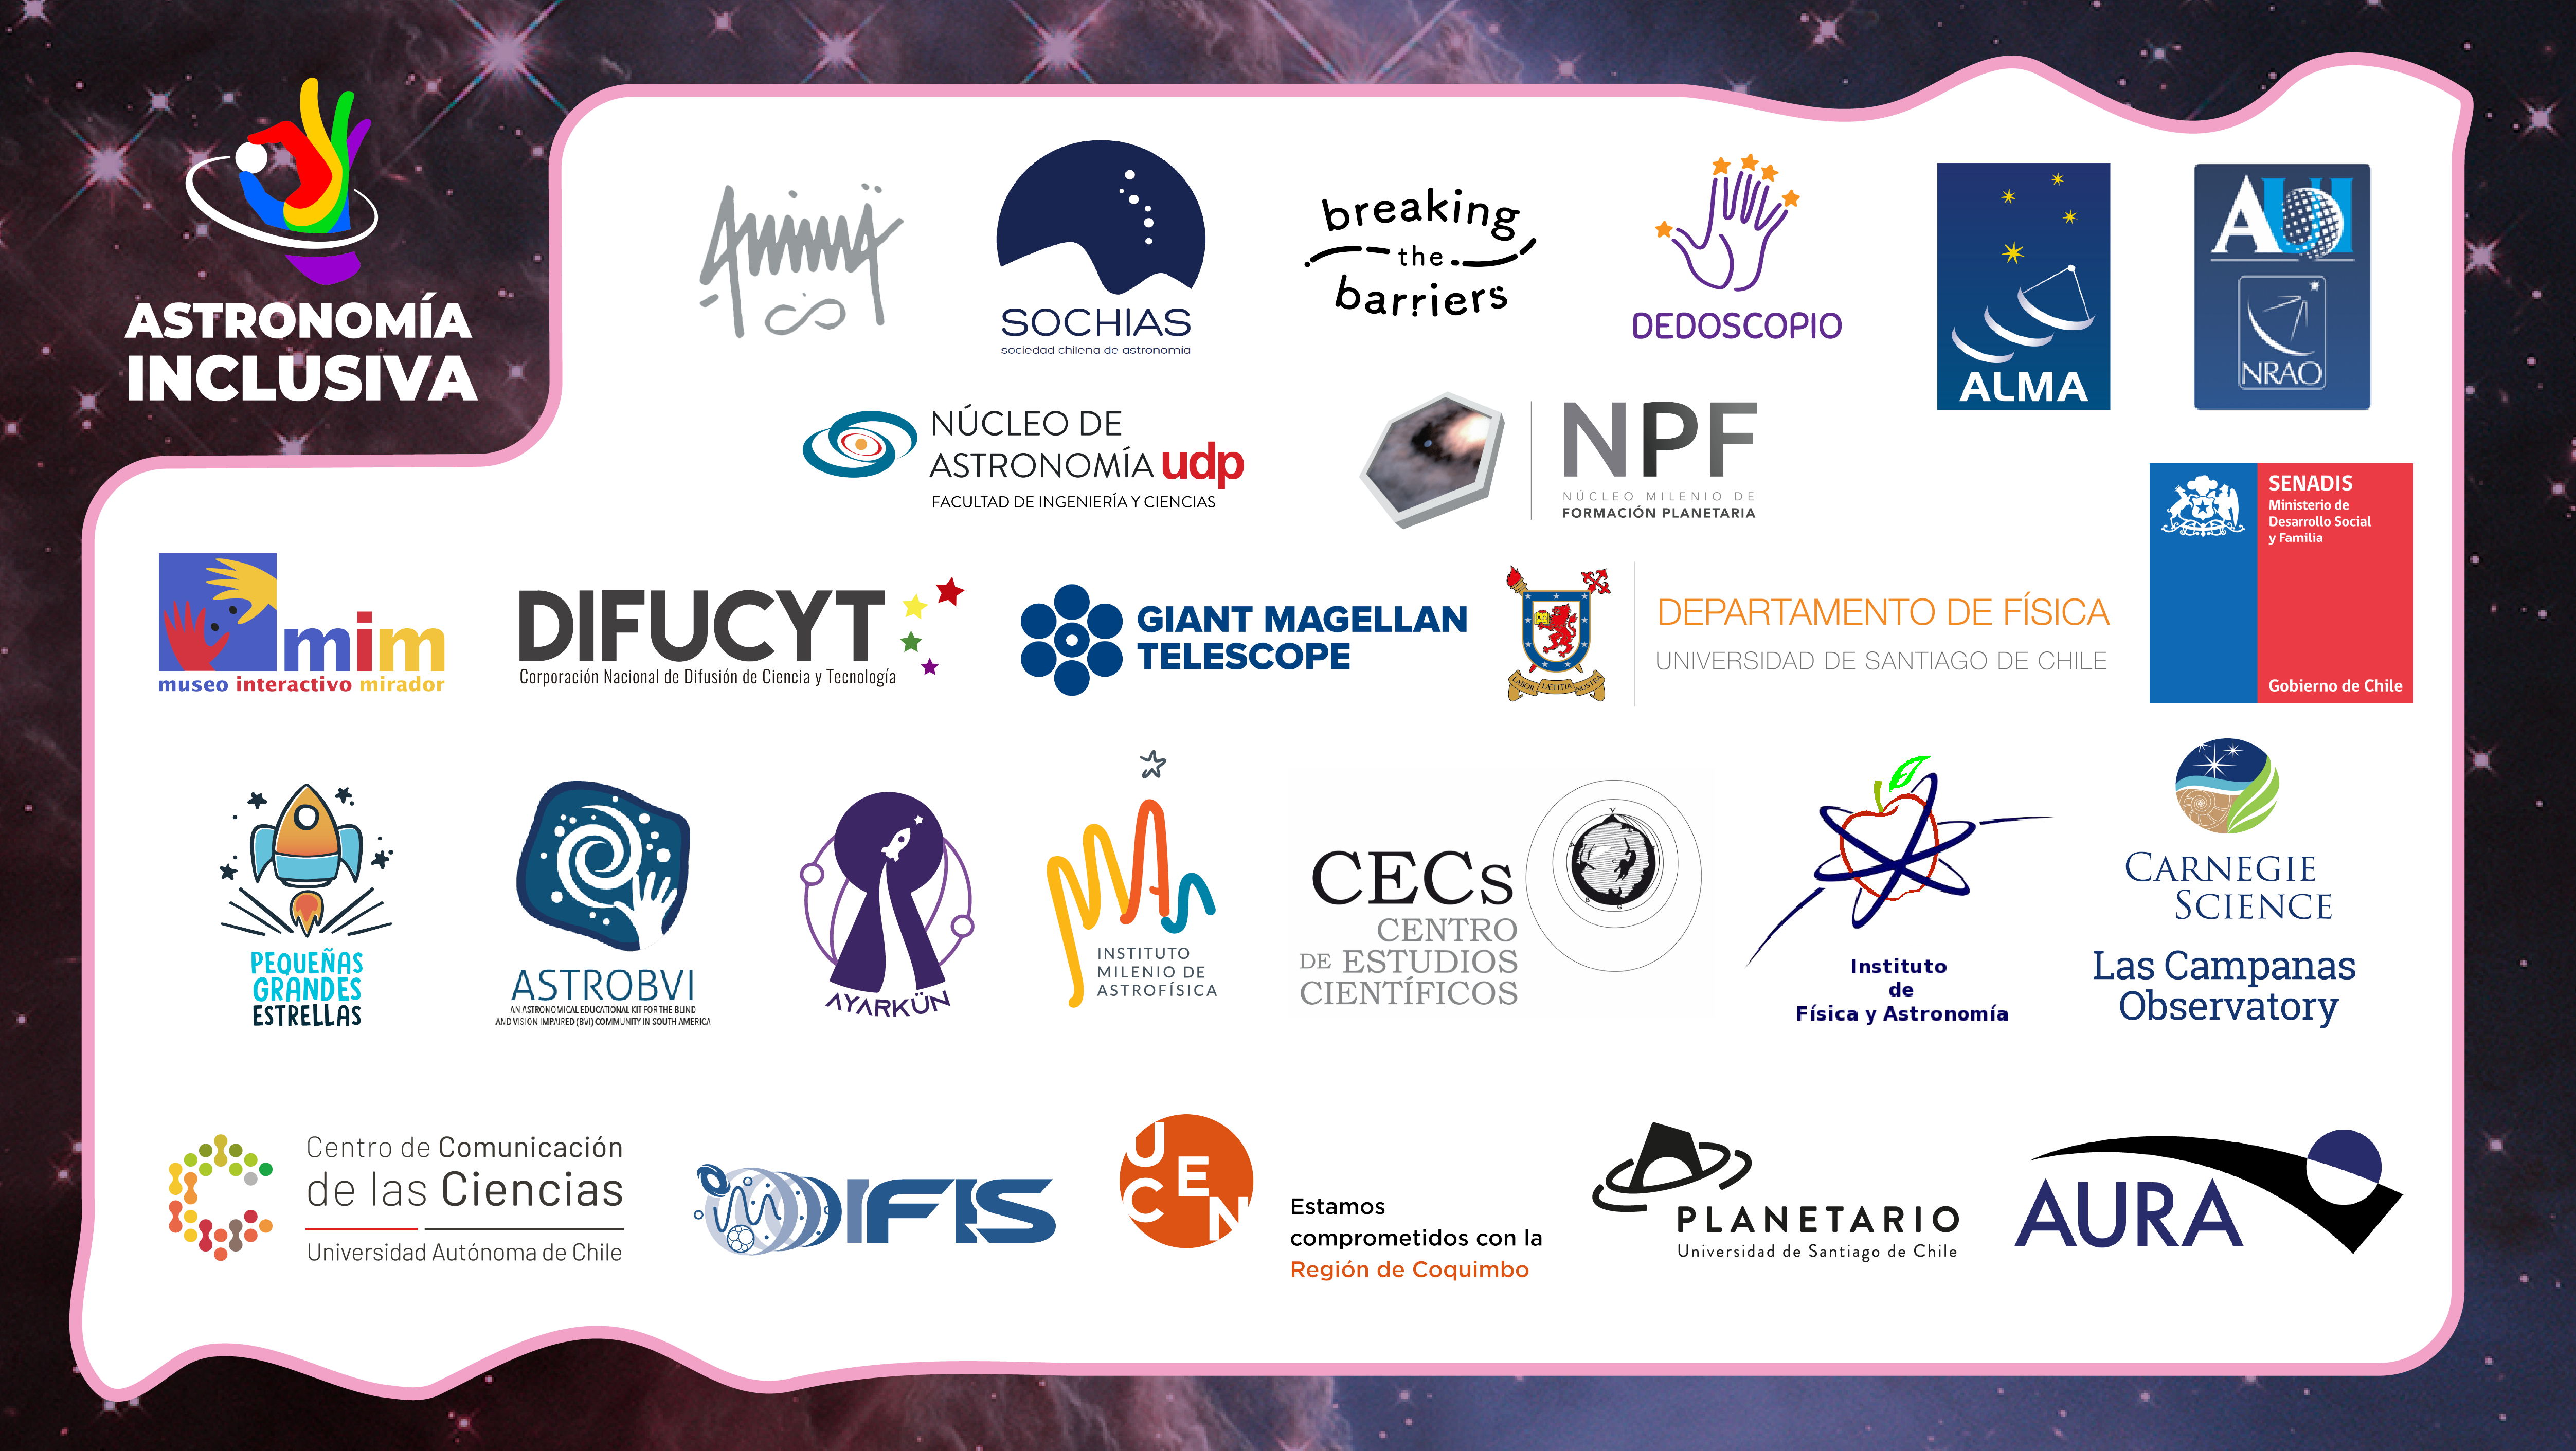 Imagen que muestra los logos de las instituciones que apoyaron la realización de la serie "Historias de Astronomía Inclusiva"